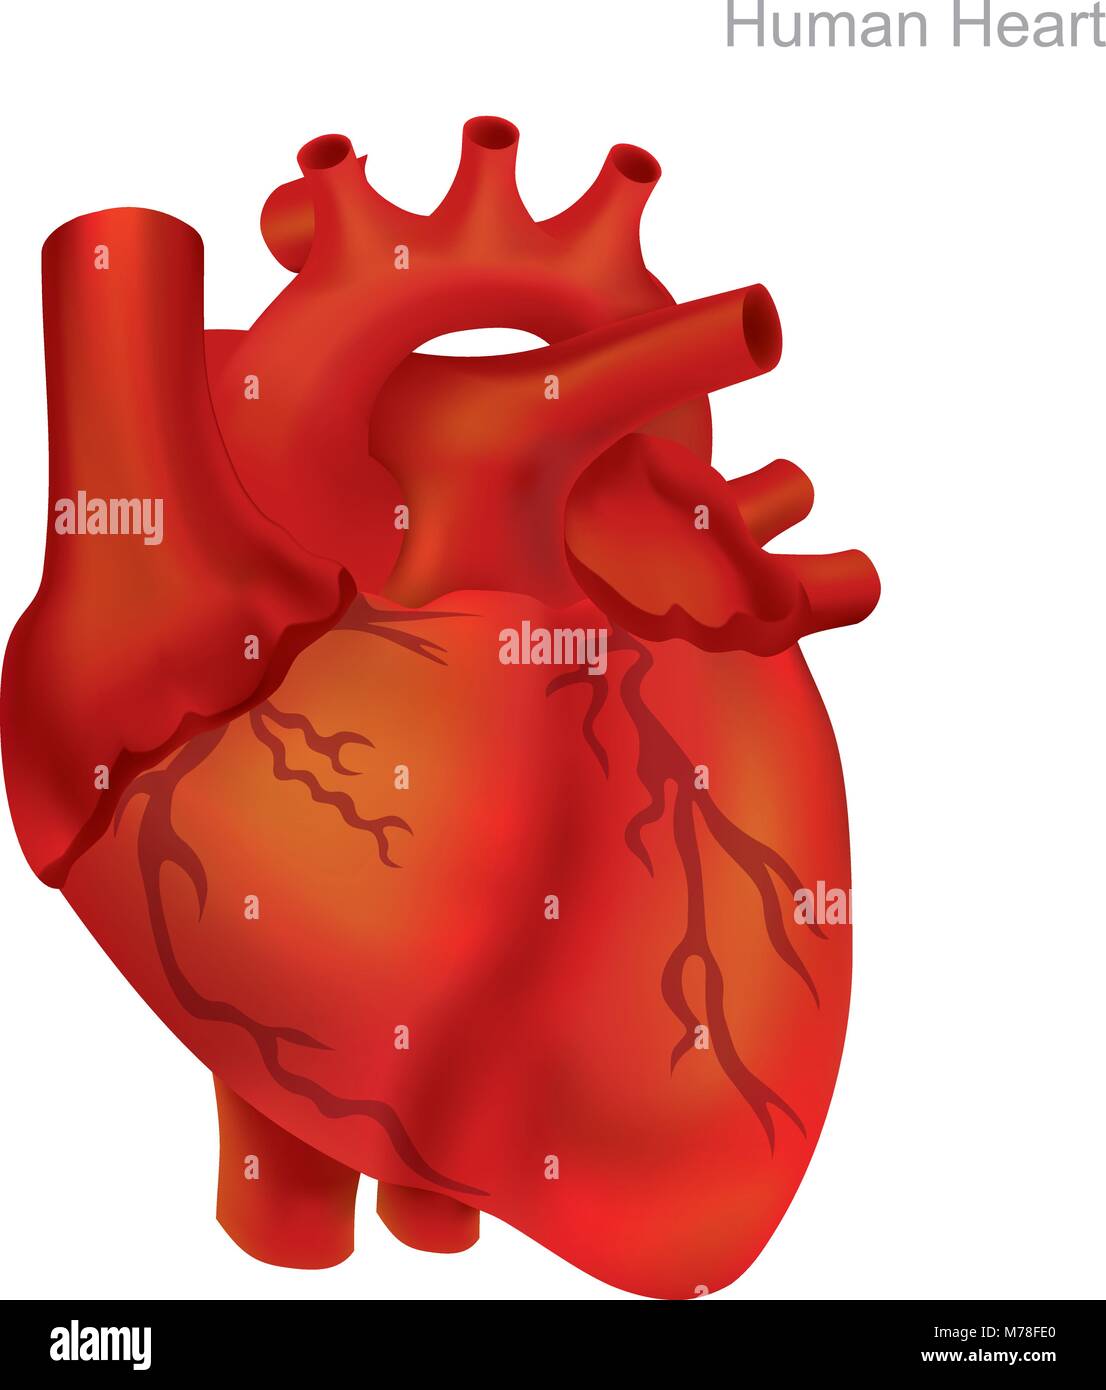 Das Herz des Menschen zu isolieren. Angioplastie ist ein Endovaskuläres Verfahren zu erweitern Arterien oder Venen verengt oder verstopft, in der Regel zur Behandlung von arteriellen atheroscl Stock Vektor